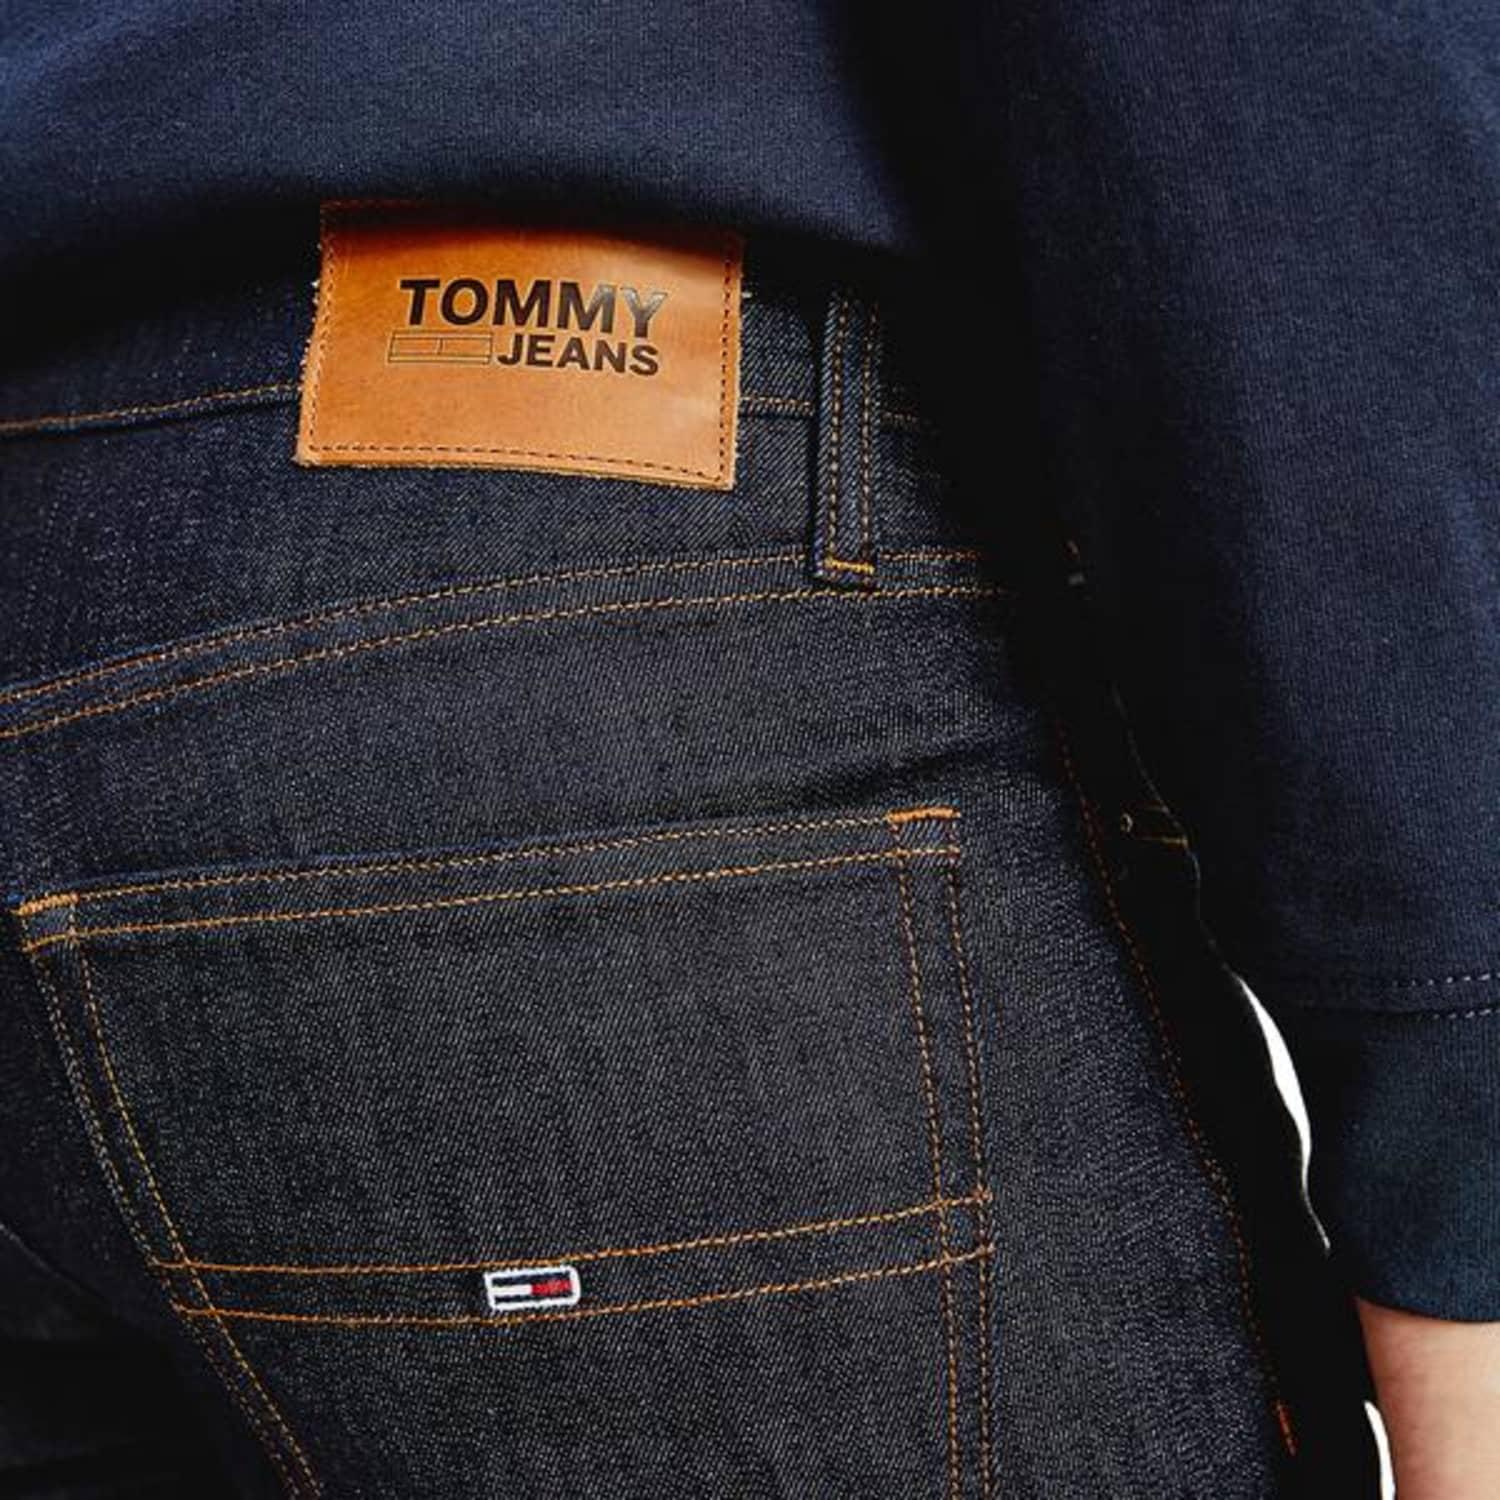 Tommy Hilfiger Denim Tommy Jeans Scanton Slim Jeans Rinse Comfort in Blue  for Men - Save 31% | Lyst